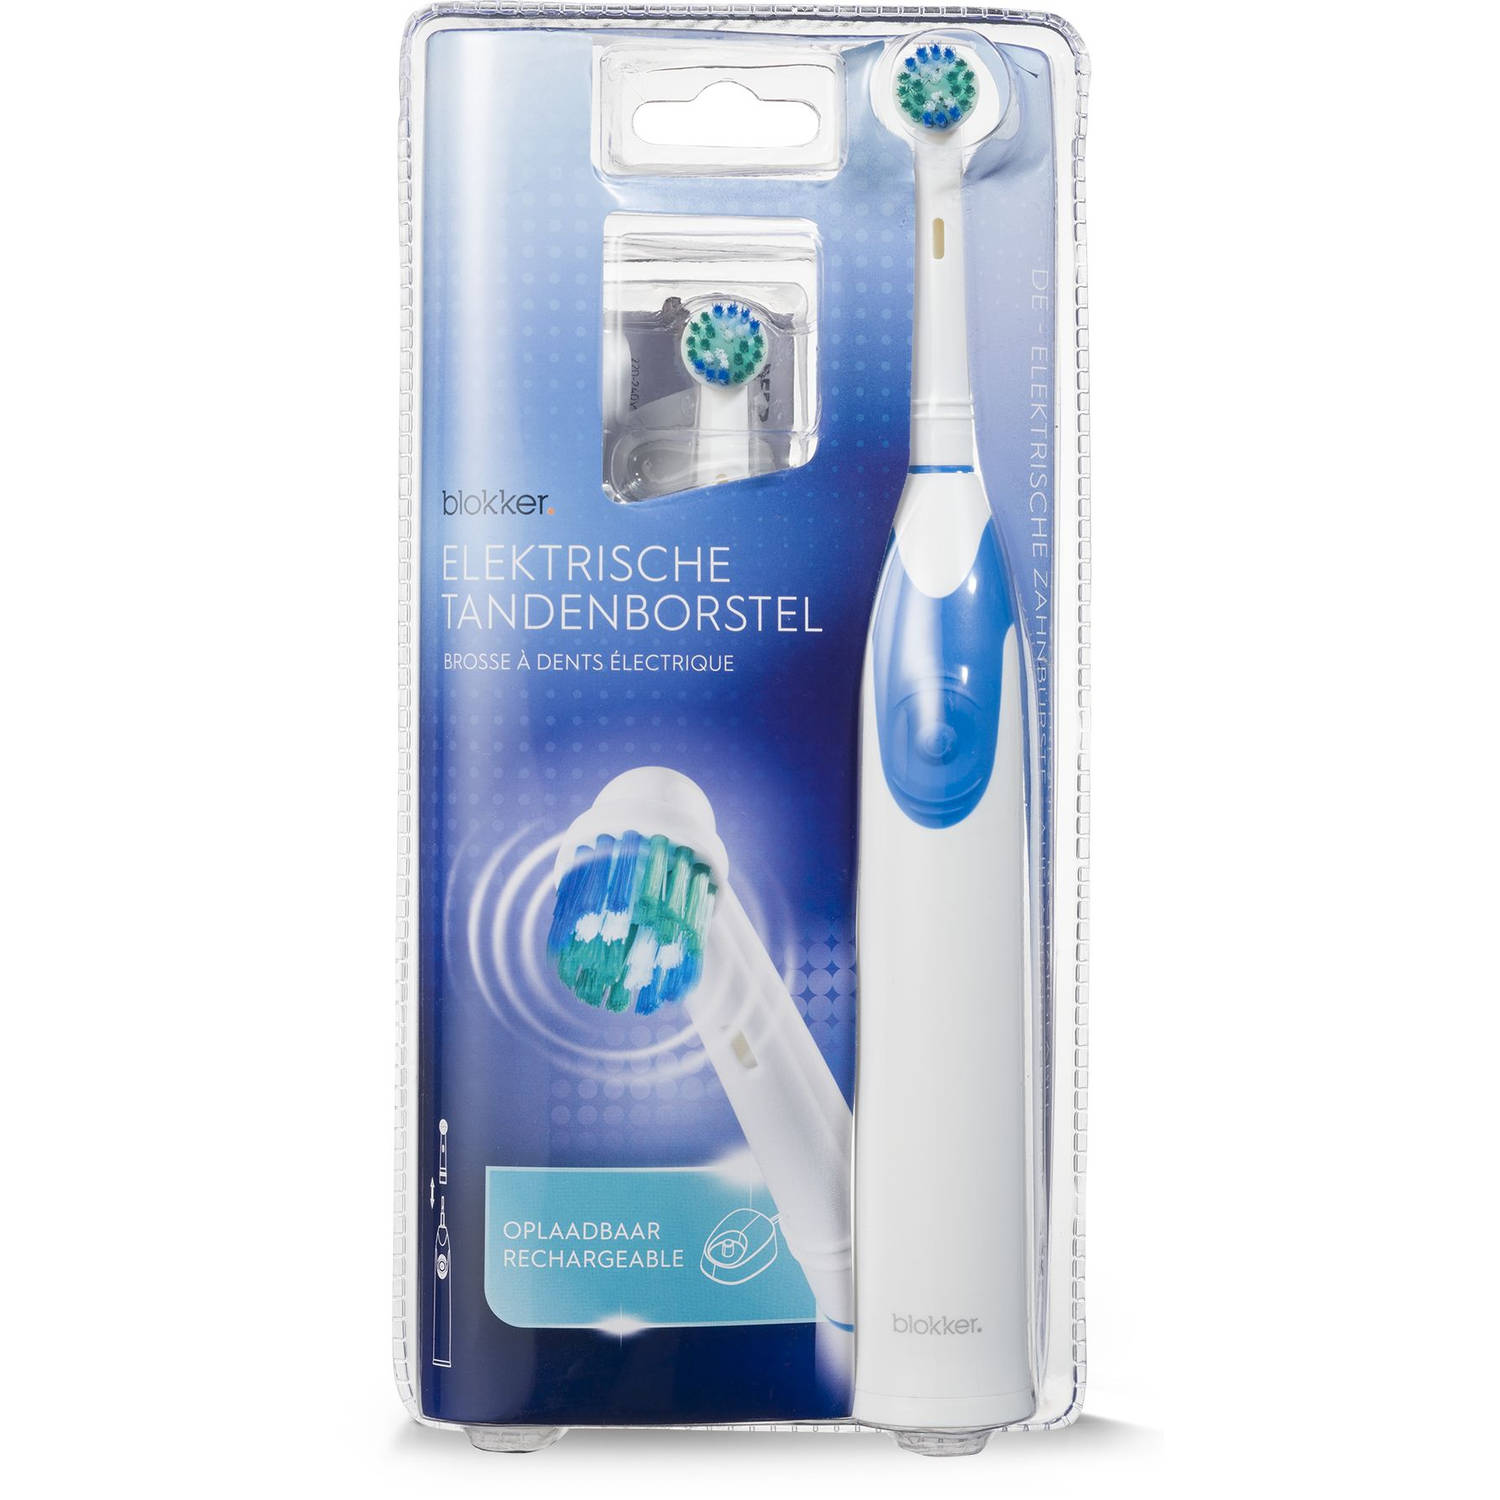 elektrische tandenborstel BL-19001 Blokker